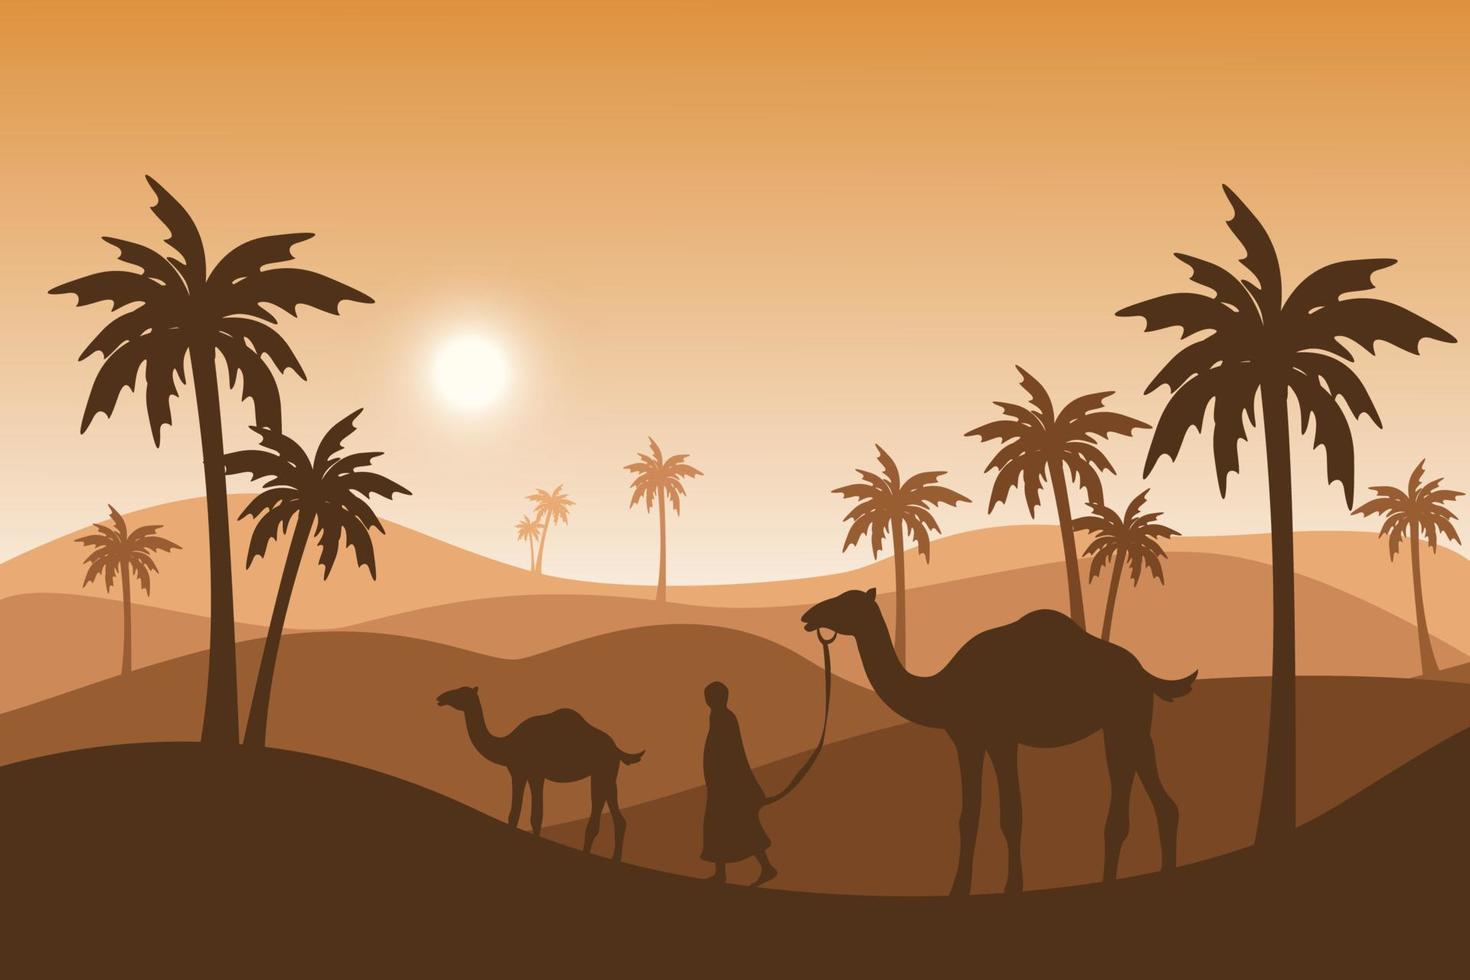 Kamel und Menschen silhouete Hintergrund, islamische Illustrationstapete, Eid al Adha Feiertag, schöne Sonnenlichtlandschaft, Palme, Sandwüste, Vektorgrafik vektor